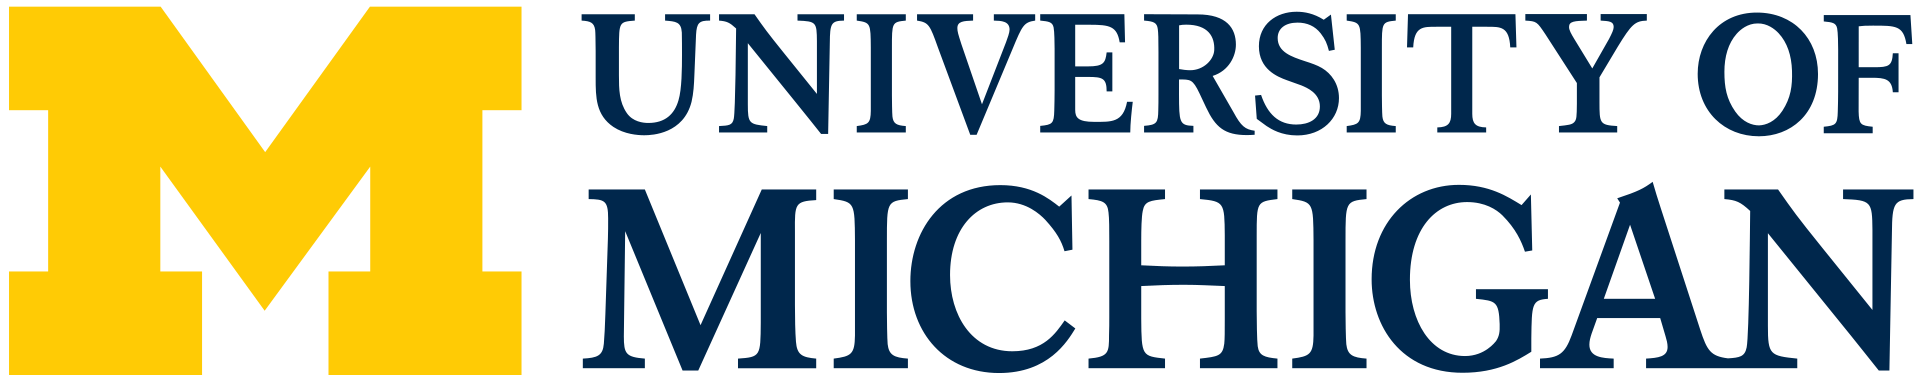 密歇根大学 logo, By 密歇根大学 - http://vpcomm.密西根大学.edu/brand/downloads/um-logo，公共领域，http://commons.维基.org/w/index.php?curid = 71242380 "